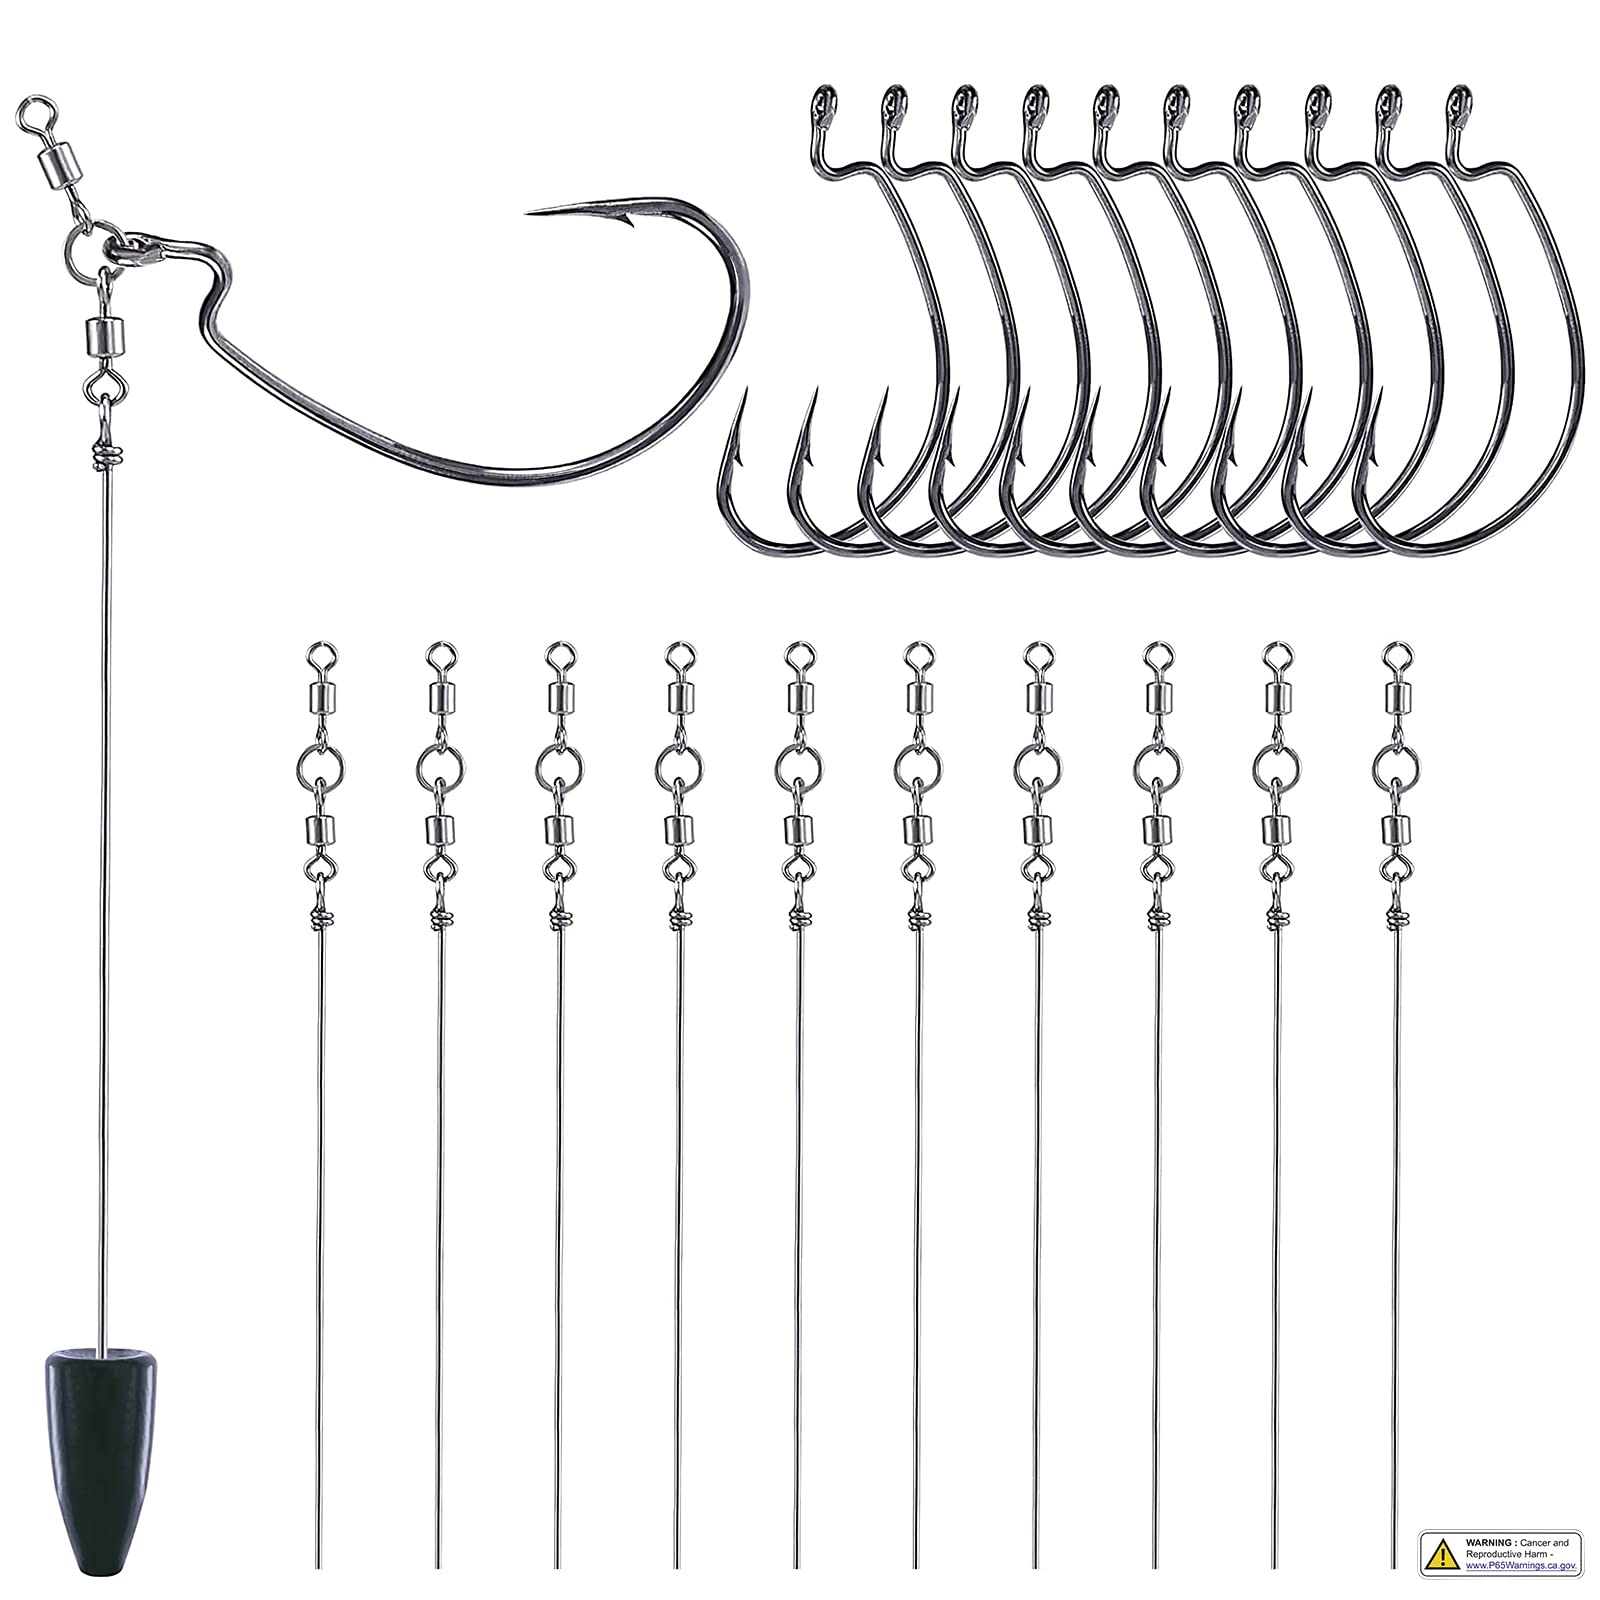  PLUSINNO 264pcs Fishing Accessories Kit, Organized